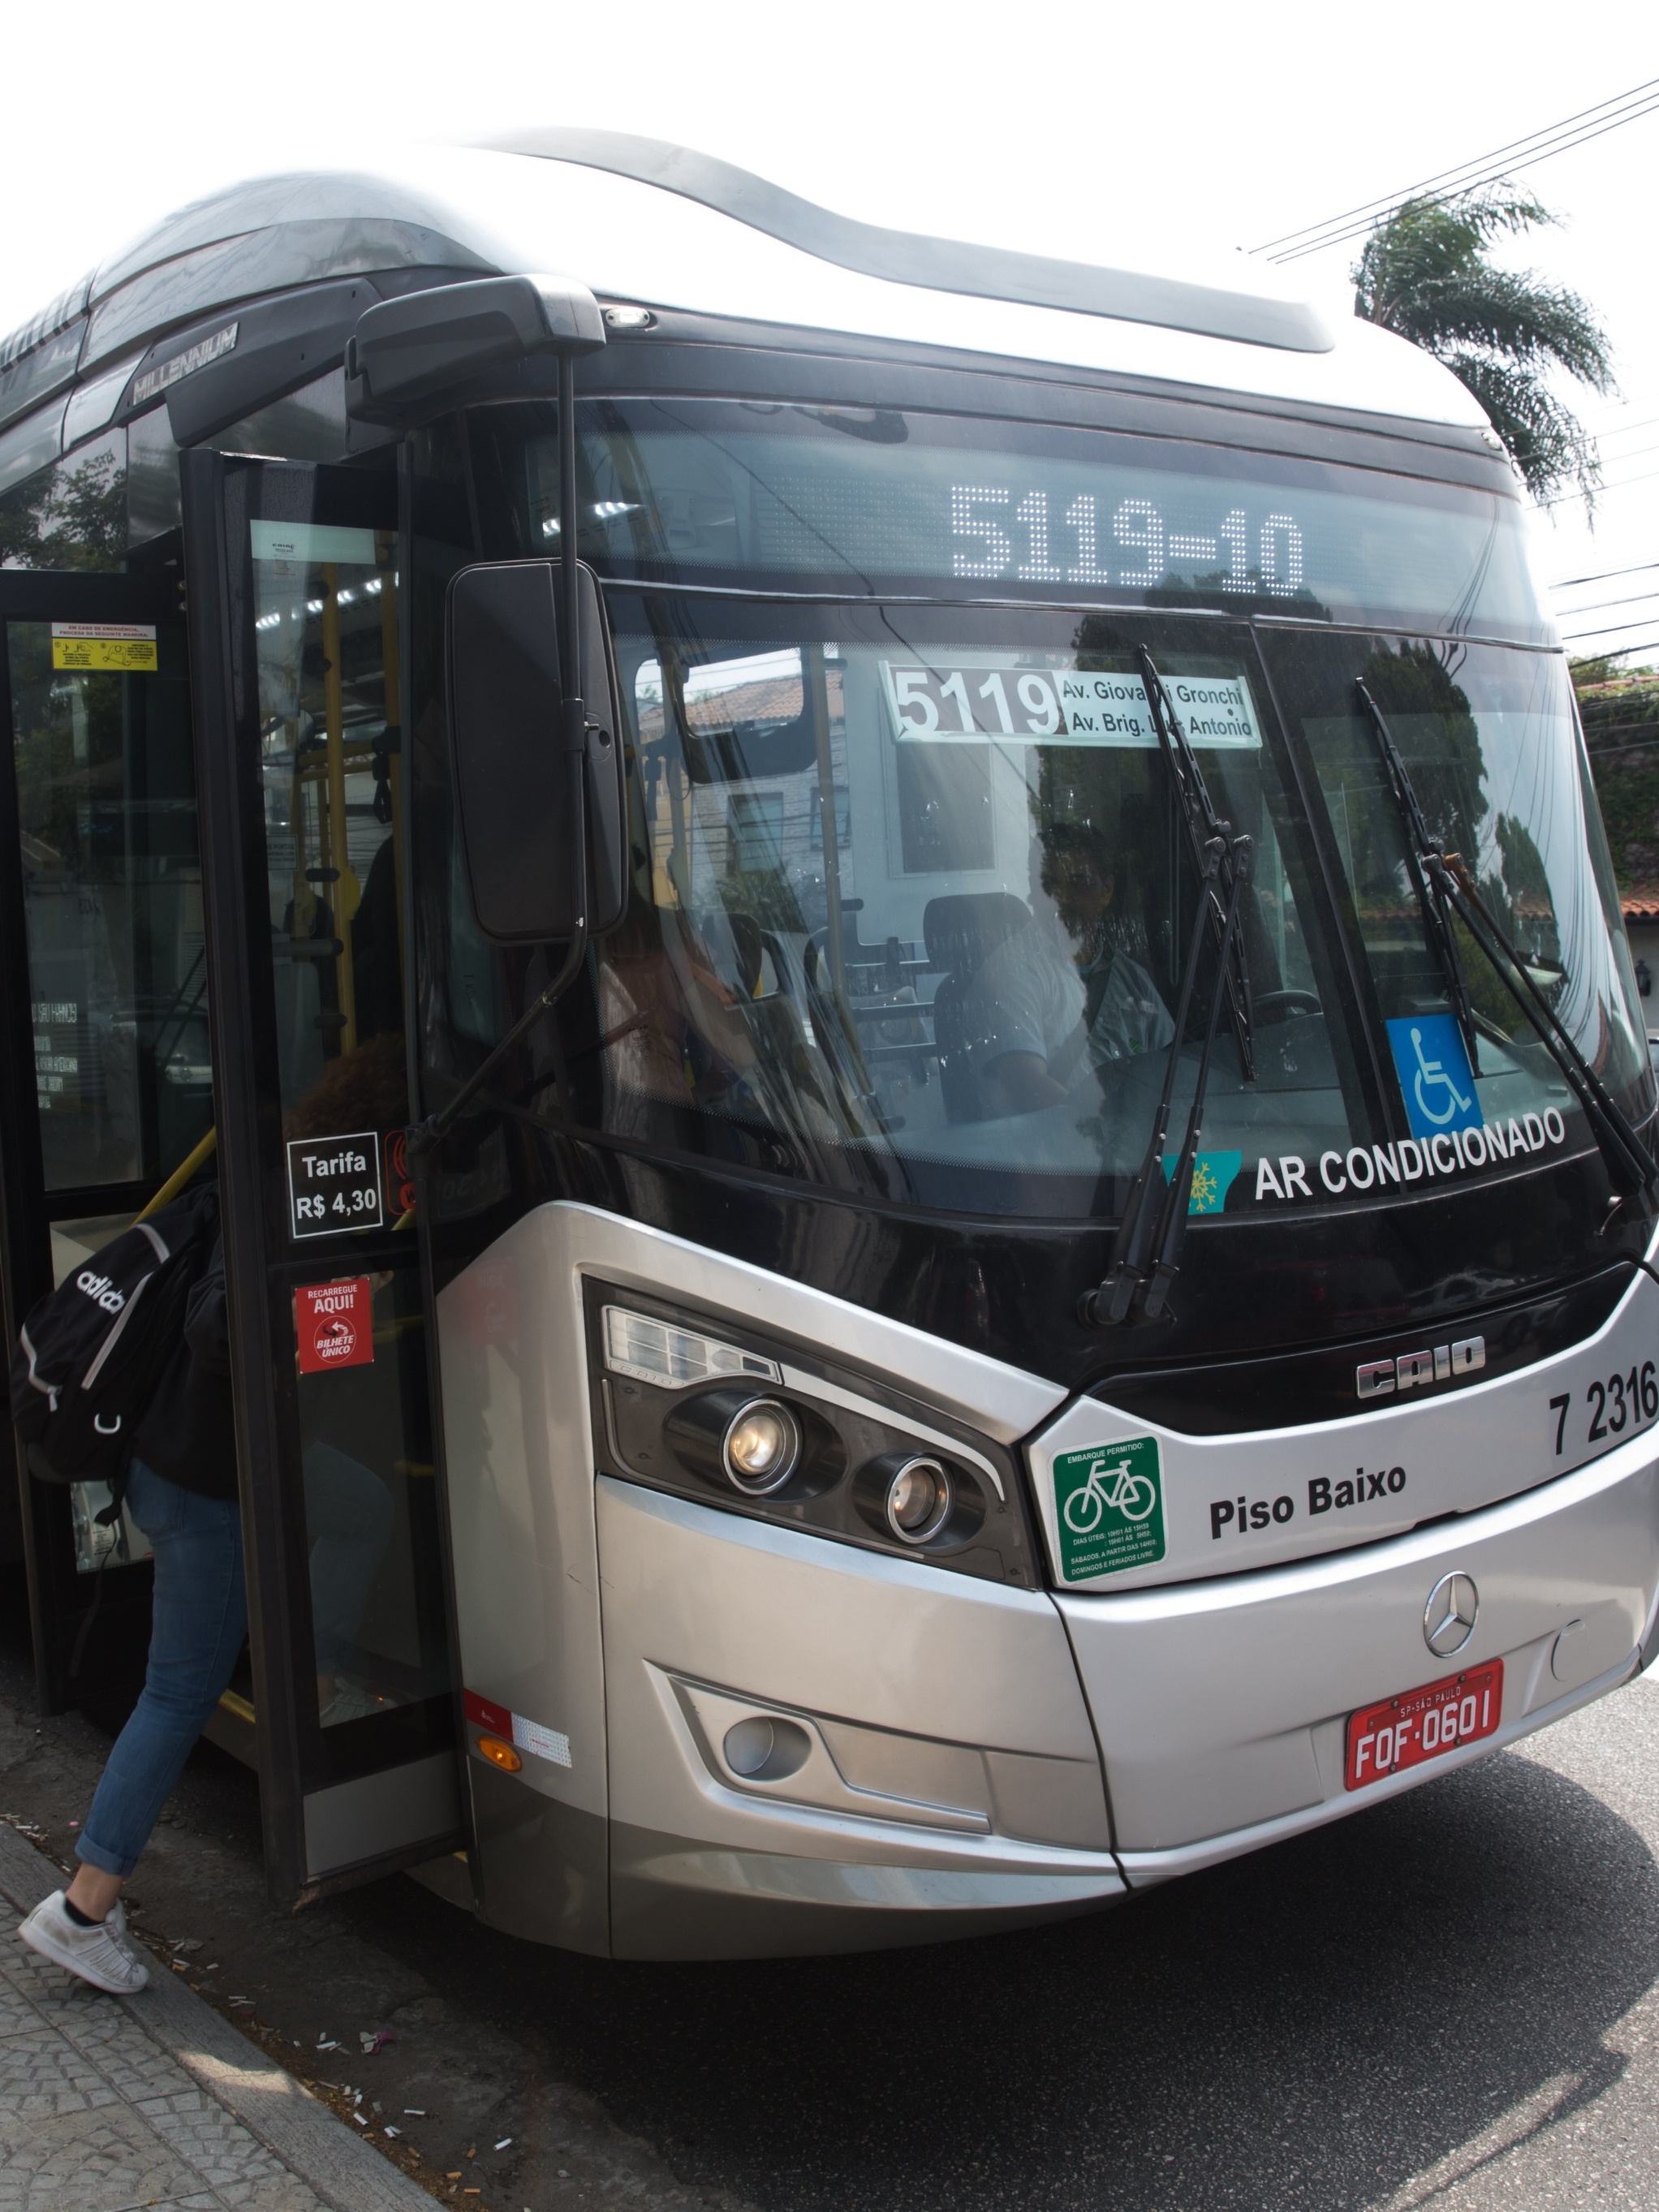 Como chegar até Sabesp Sapopemba em São Mateus de Ônibus ou Metrô?